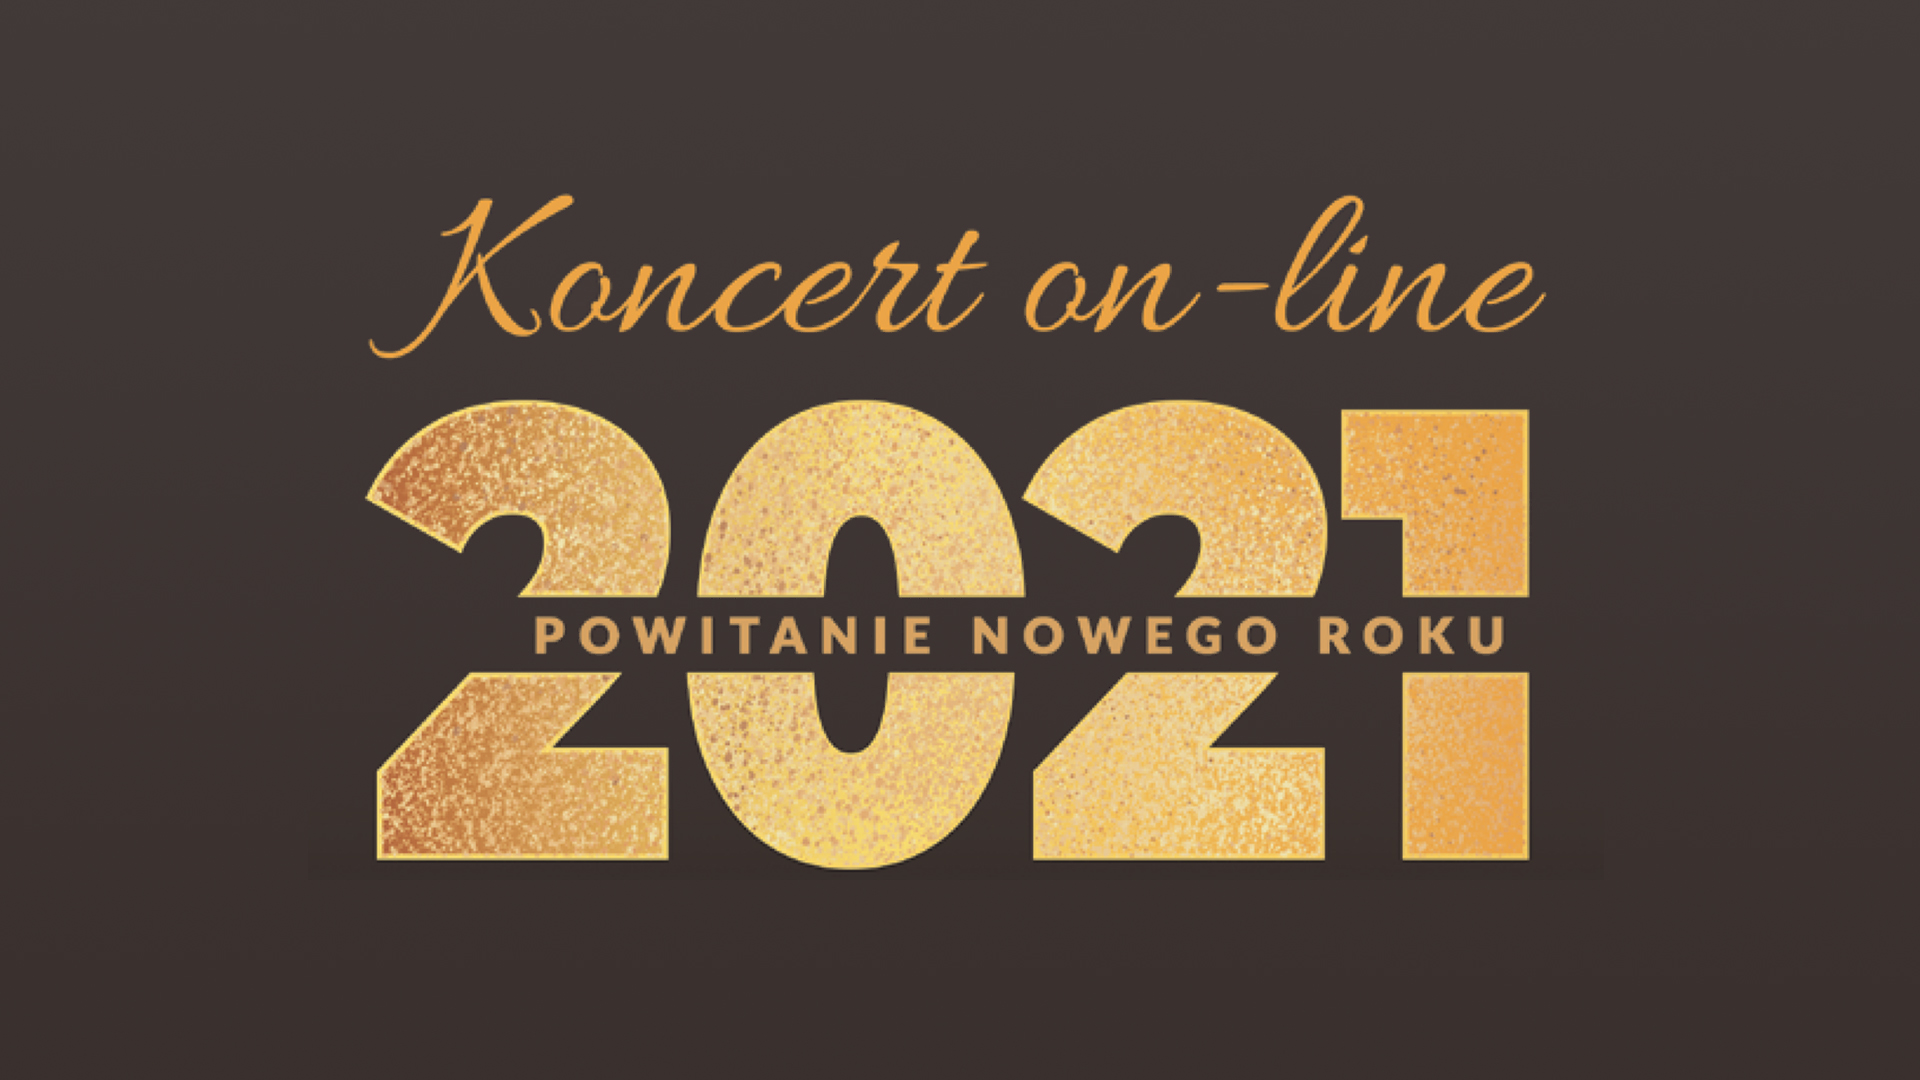 Sylwester w Pruszczu Gdańskim - w tym roku koncert on-line